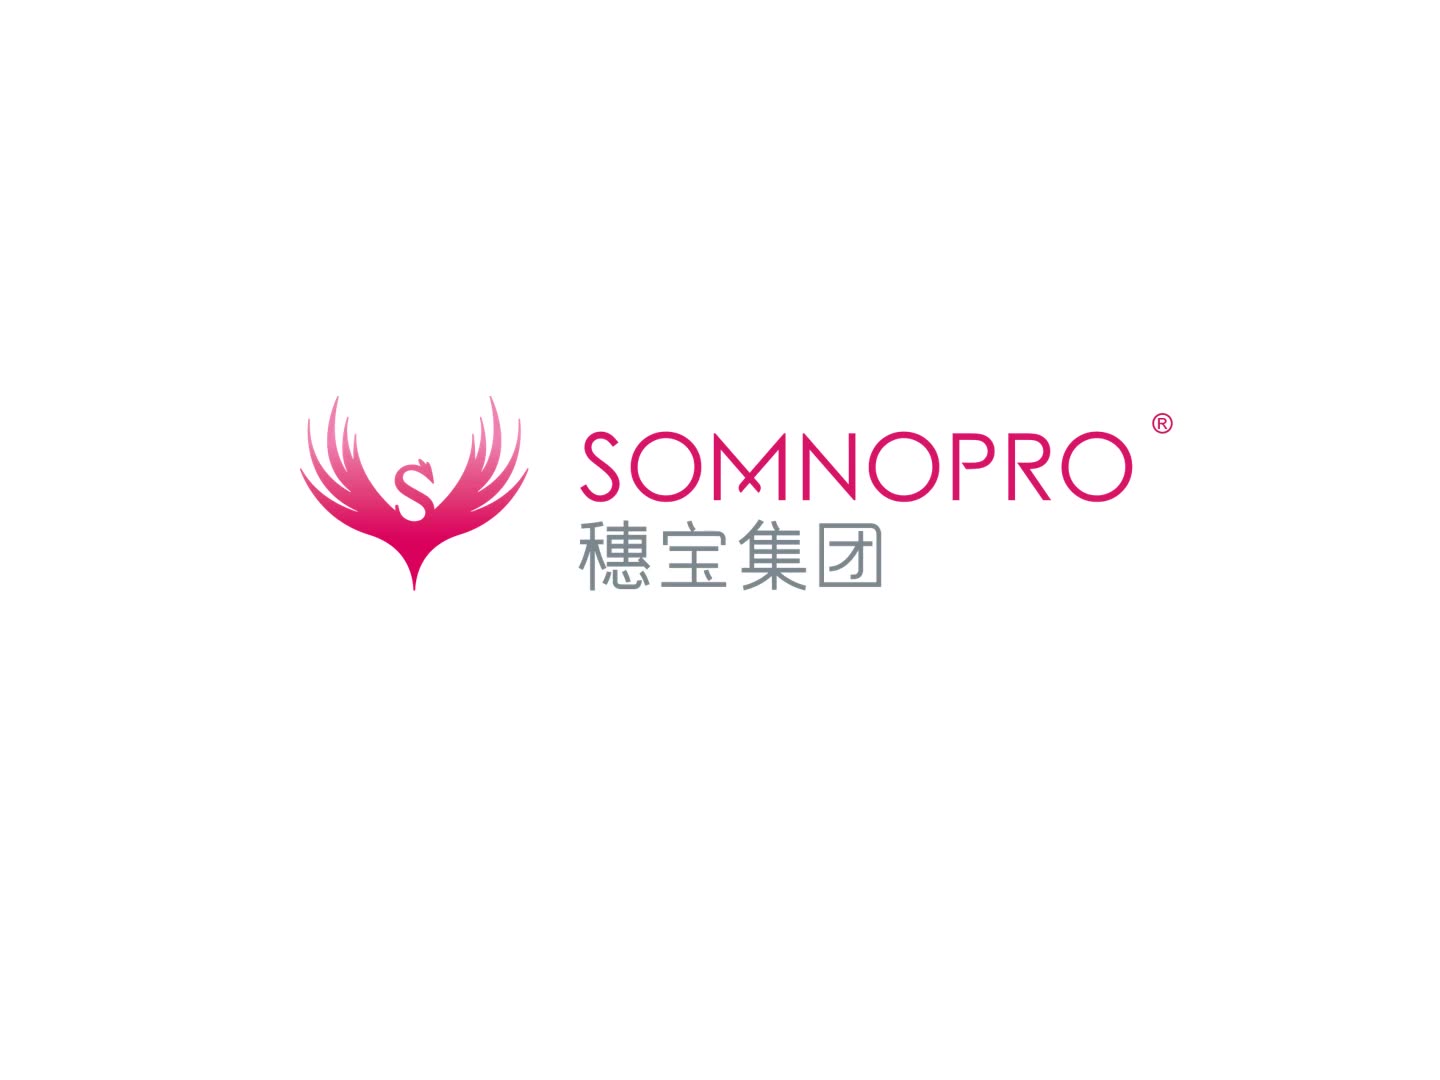 45 Years Anniversary of Somnopro Group